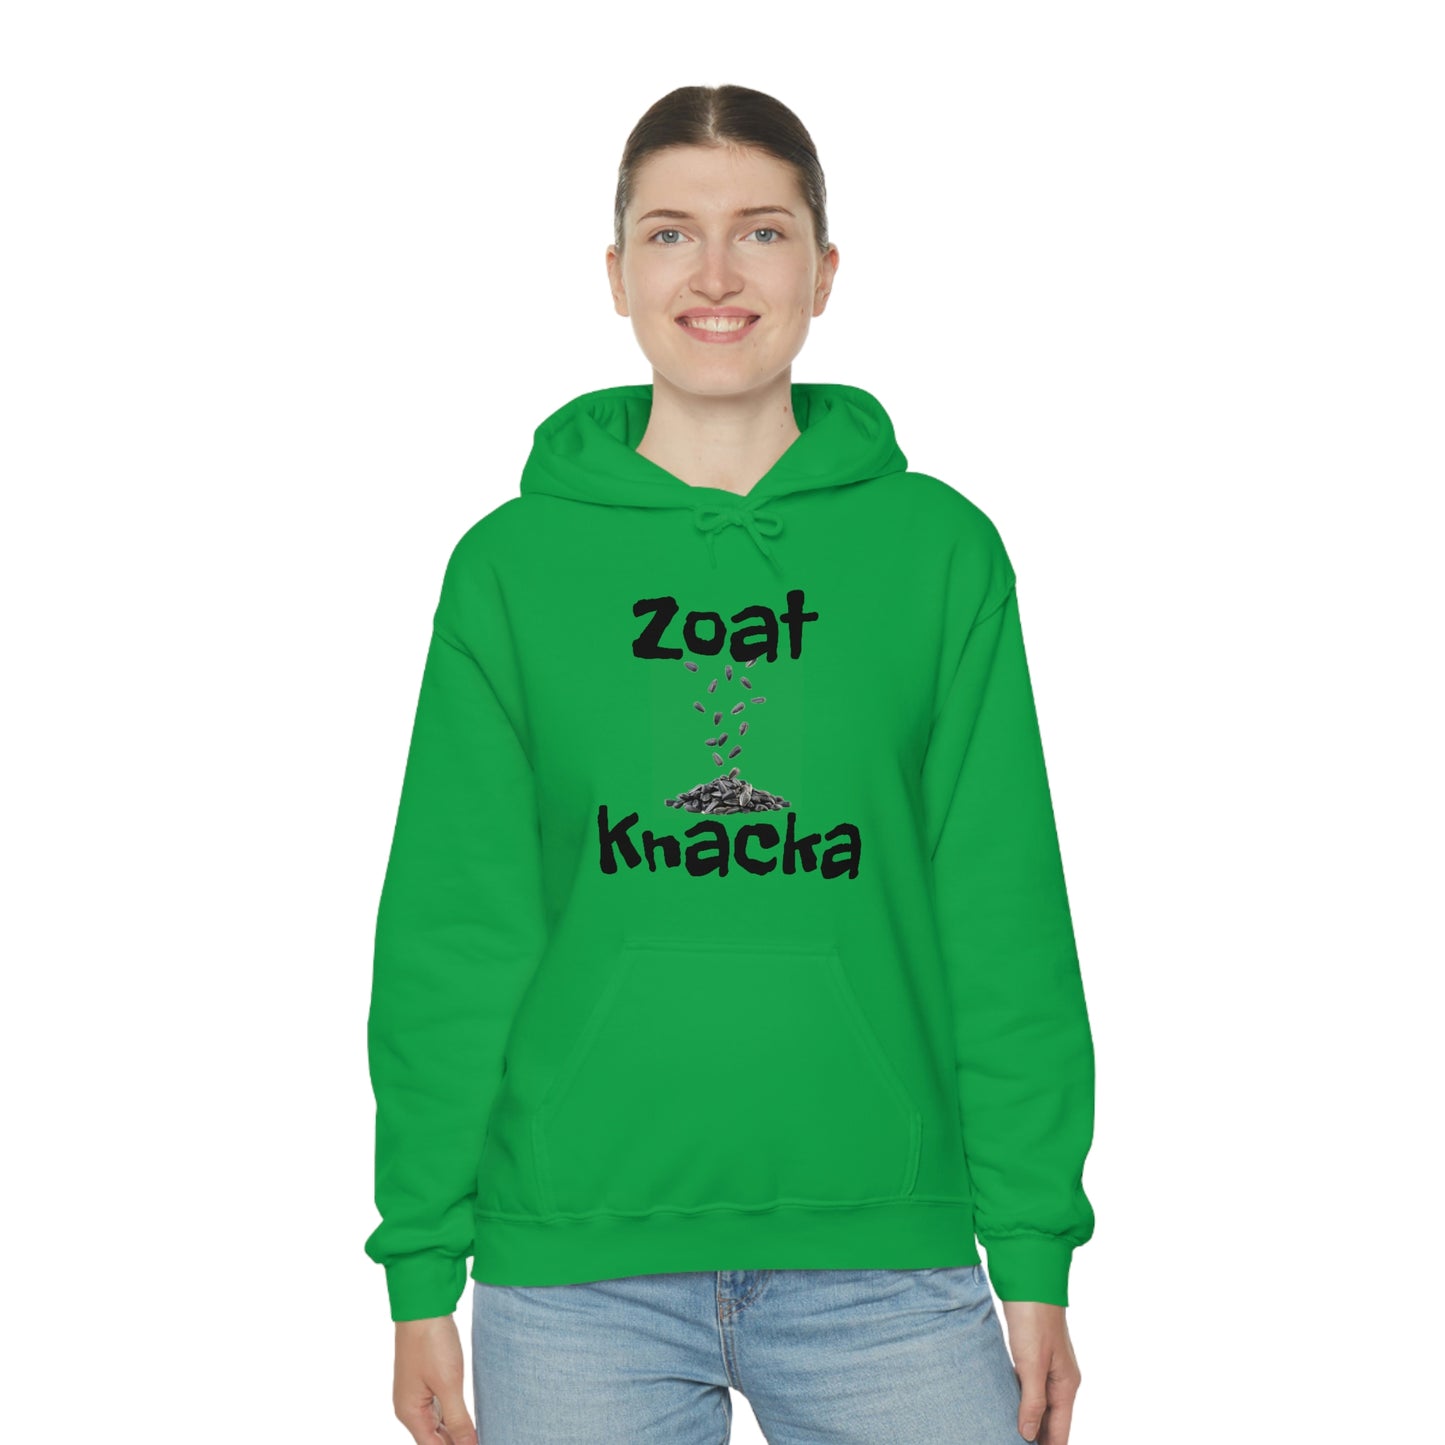 Zoat Knacka Unisex Heavy Blend™ Hooded Sweatshirt